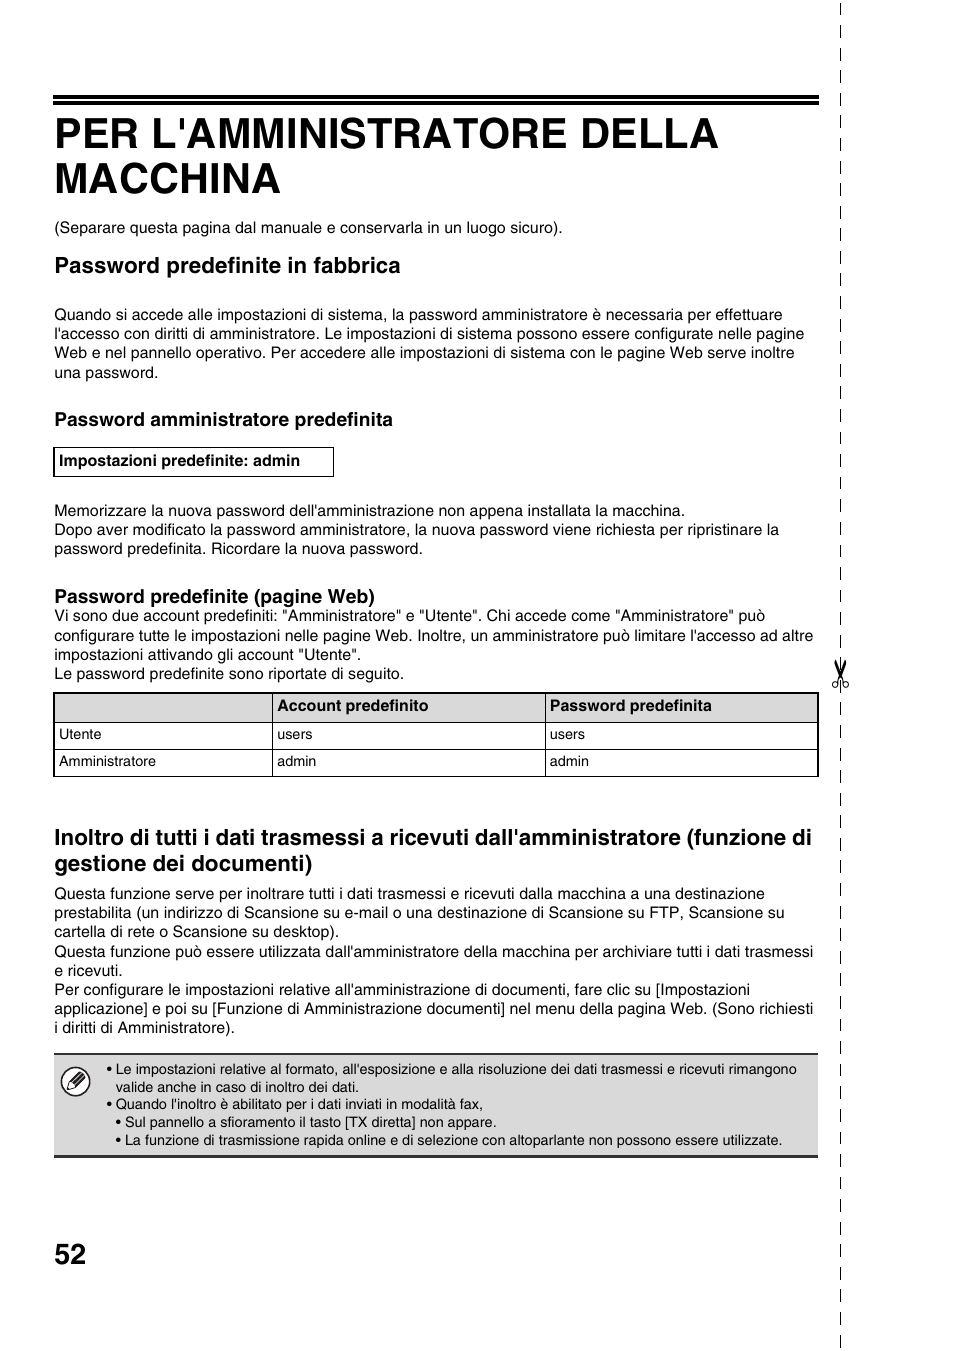 Per l'amministratore della macchina, Password predefinite in fabbrica | Sharp MX-M753U Manuale d'uso | Pagina 54 / 60